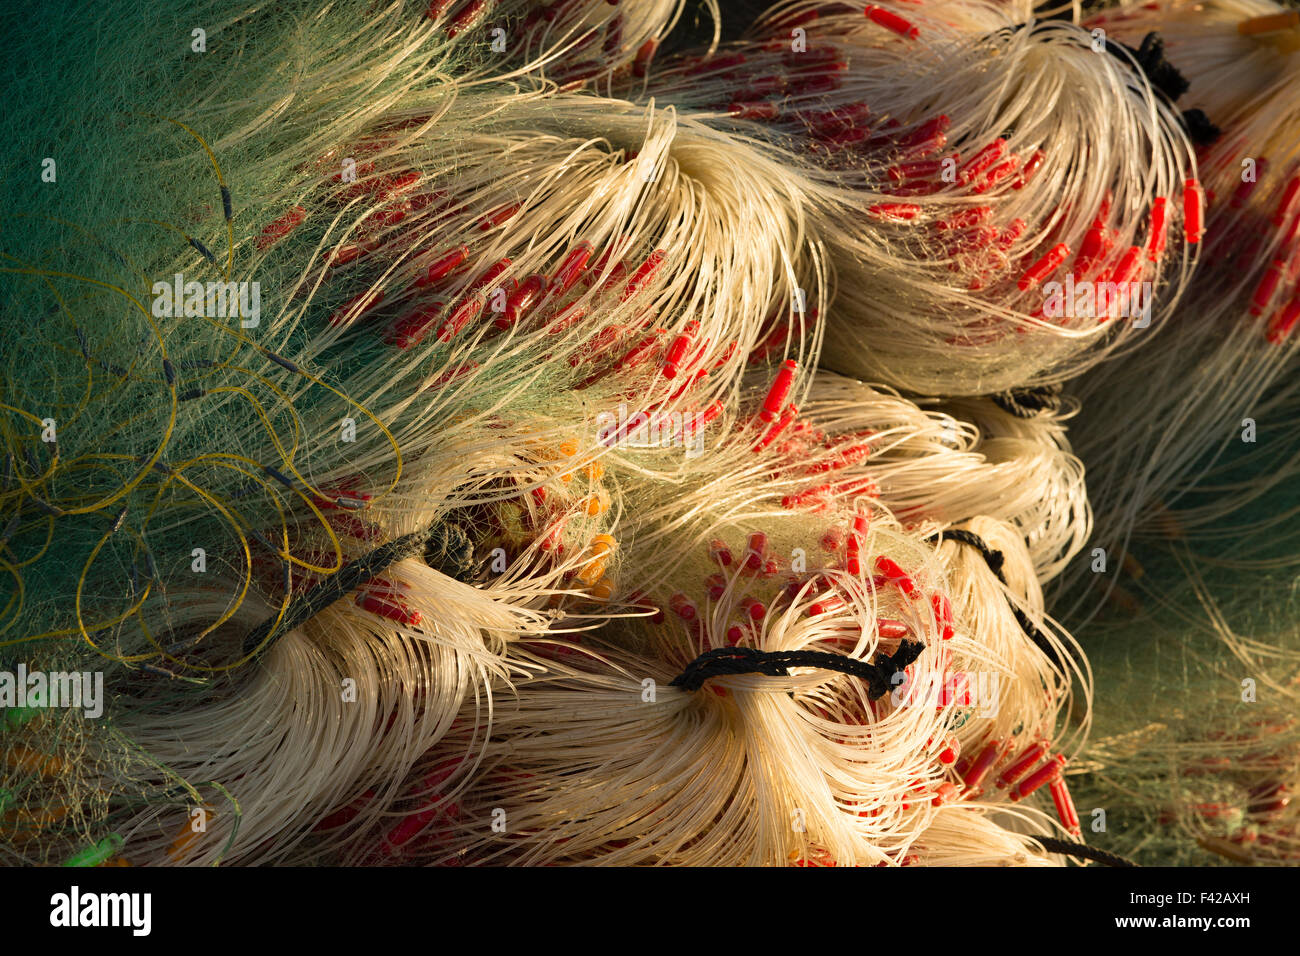 Flicken der Netze, Fischerdorf Mũi Né, Bình Thuận Provinz, Vietnam Stockfoto